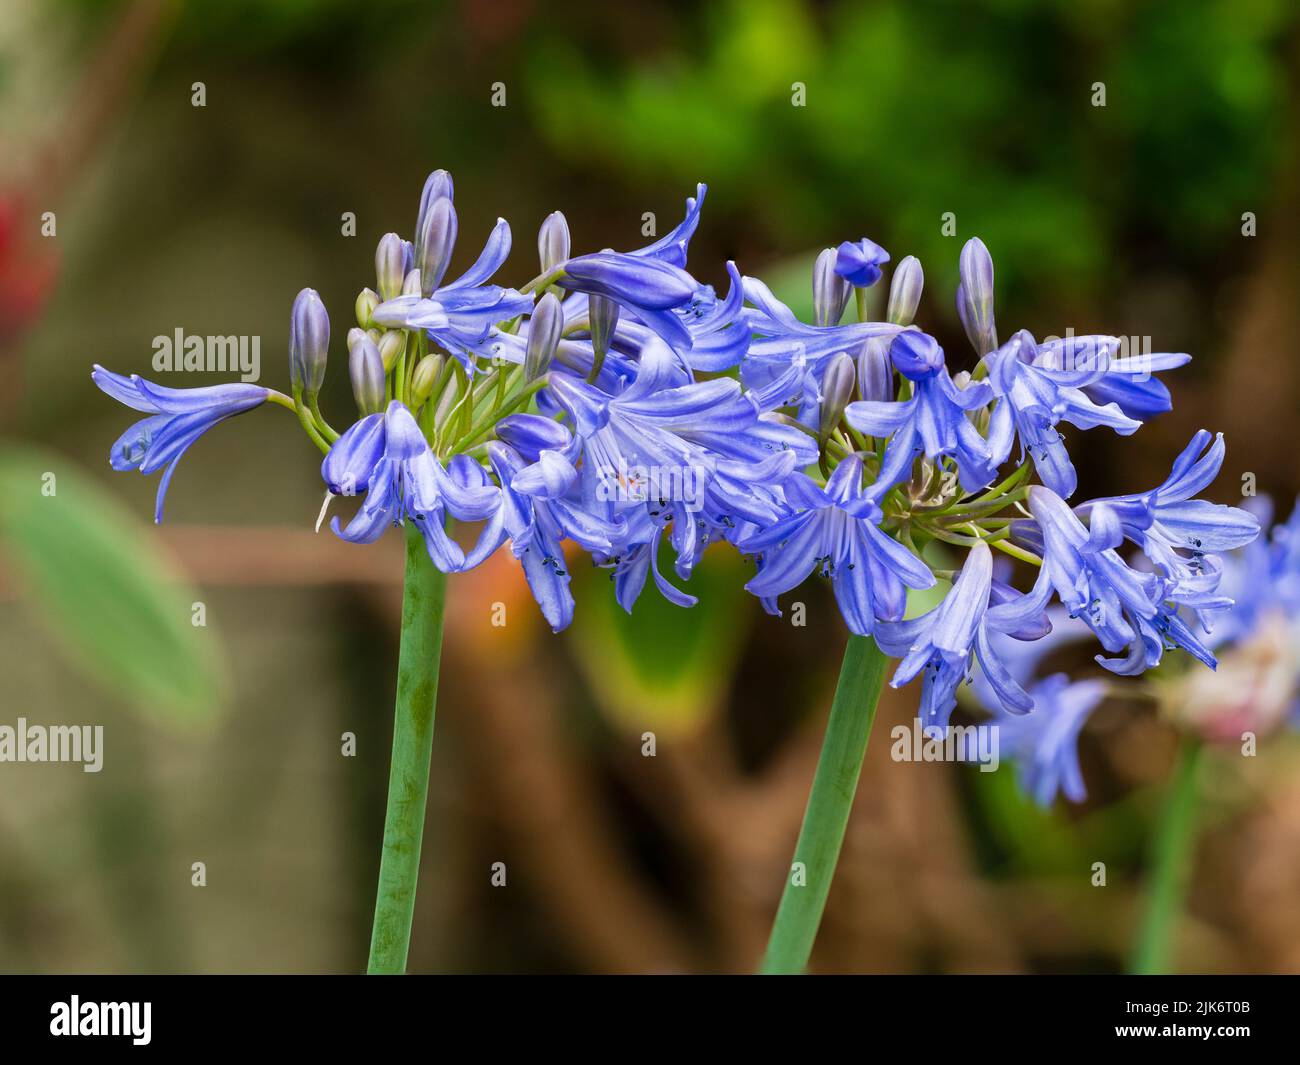 Fleurs de trompette bleue dans les têtes de la vivace, florissant d'été, Agapanthus 'Bressingham Blue' Banque D'Images